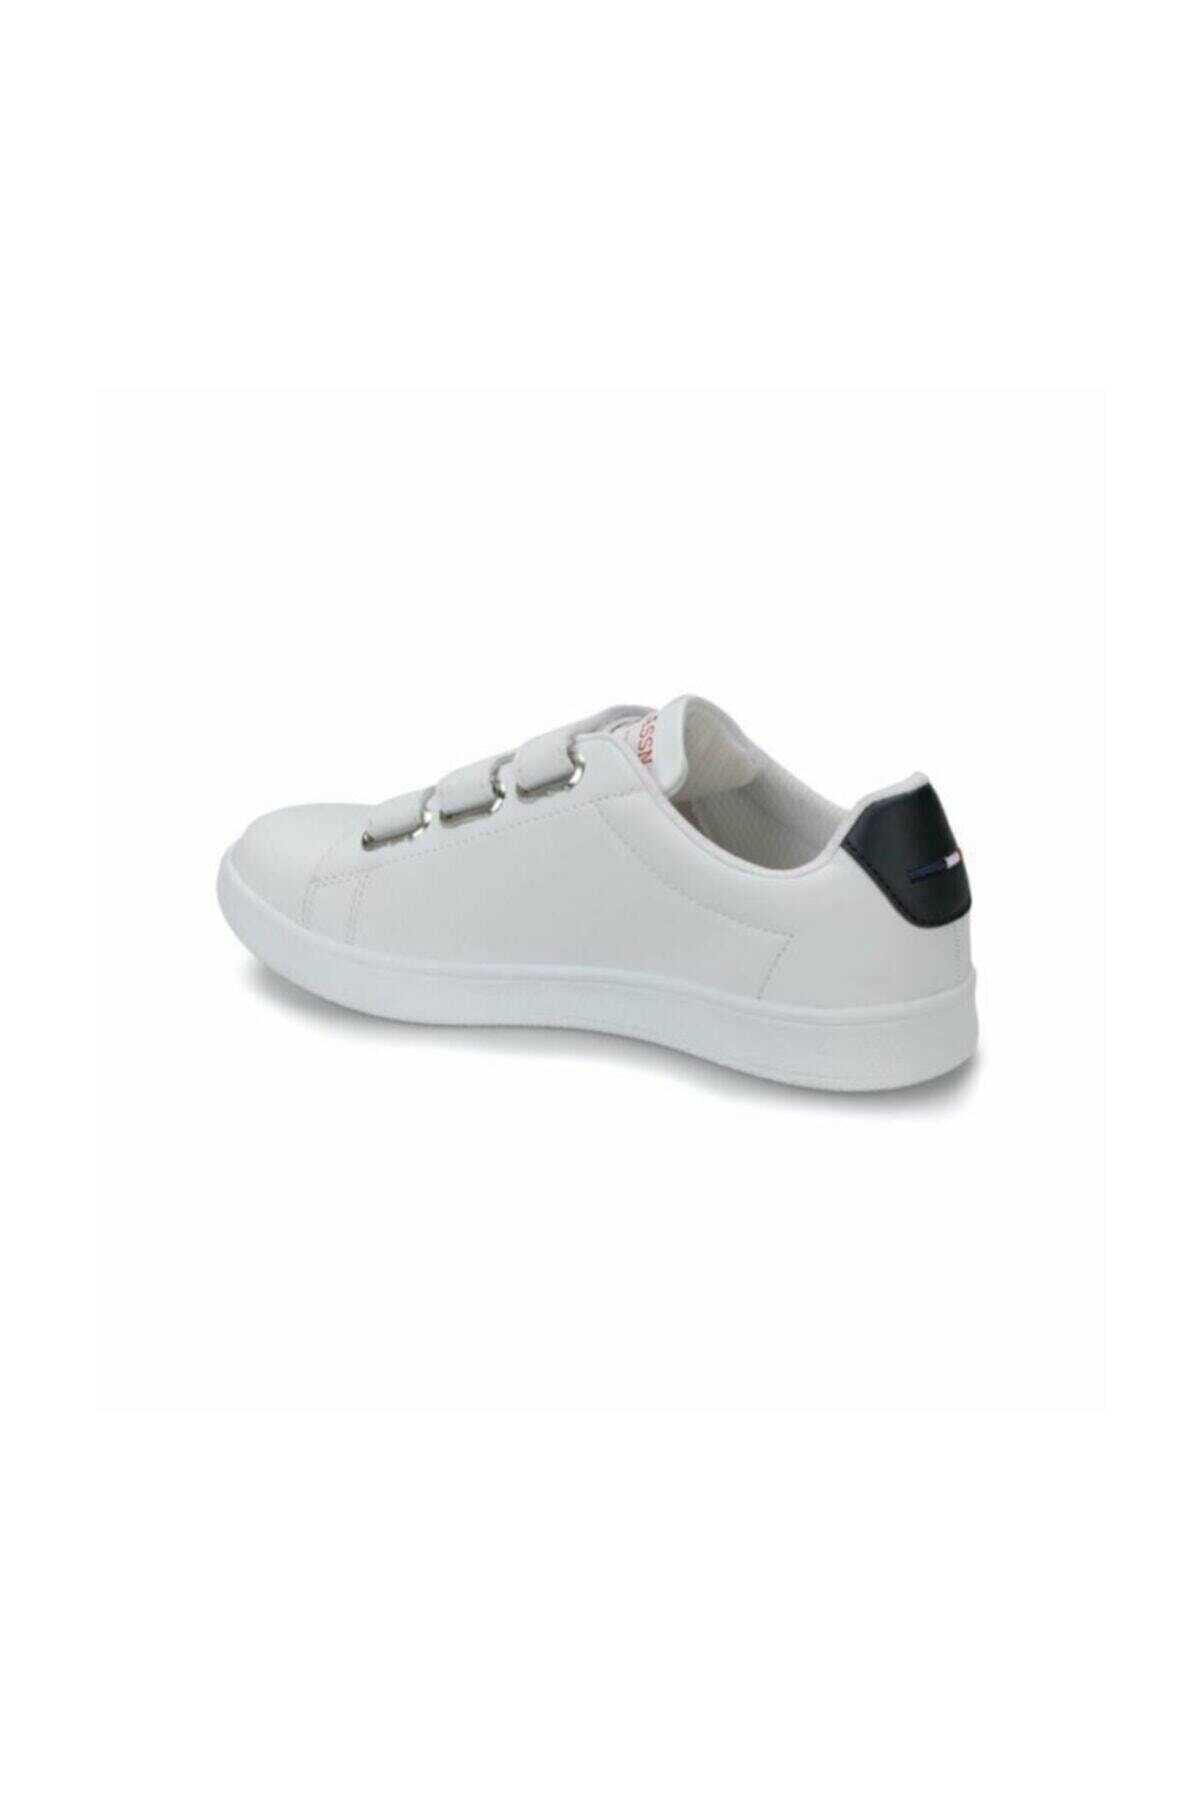  کفش کتانی زنانه سری SINGER 100279016 سفید برند U.S. Polo Assn